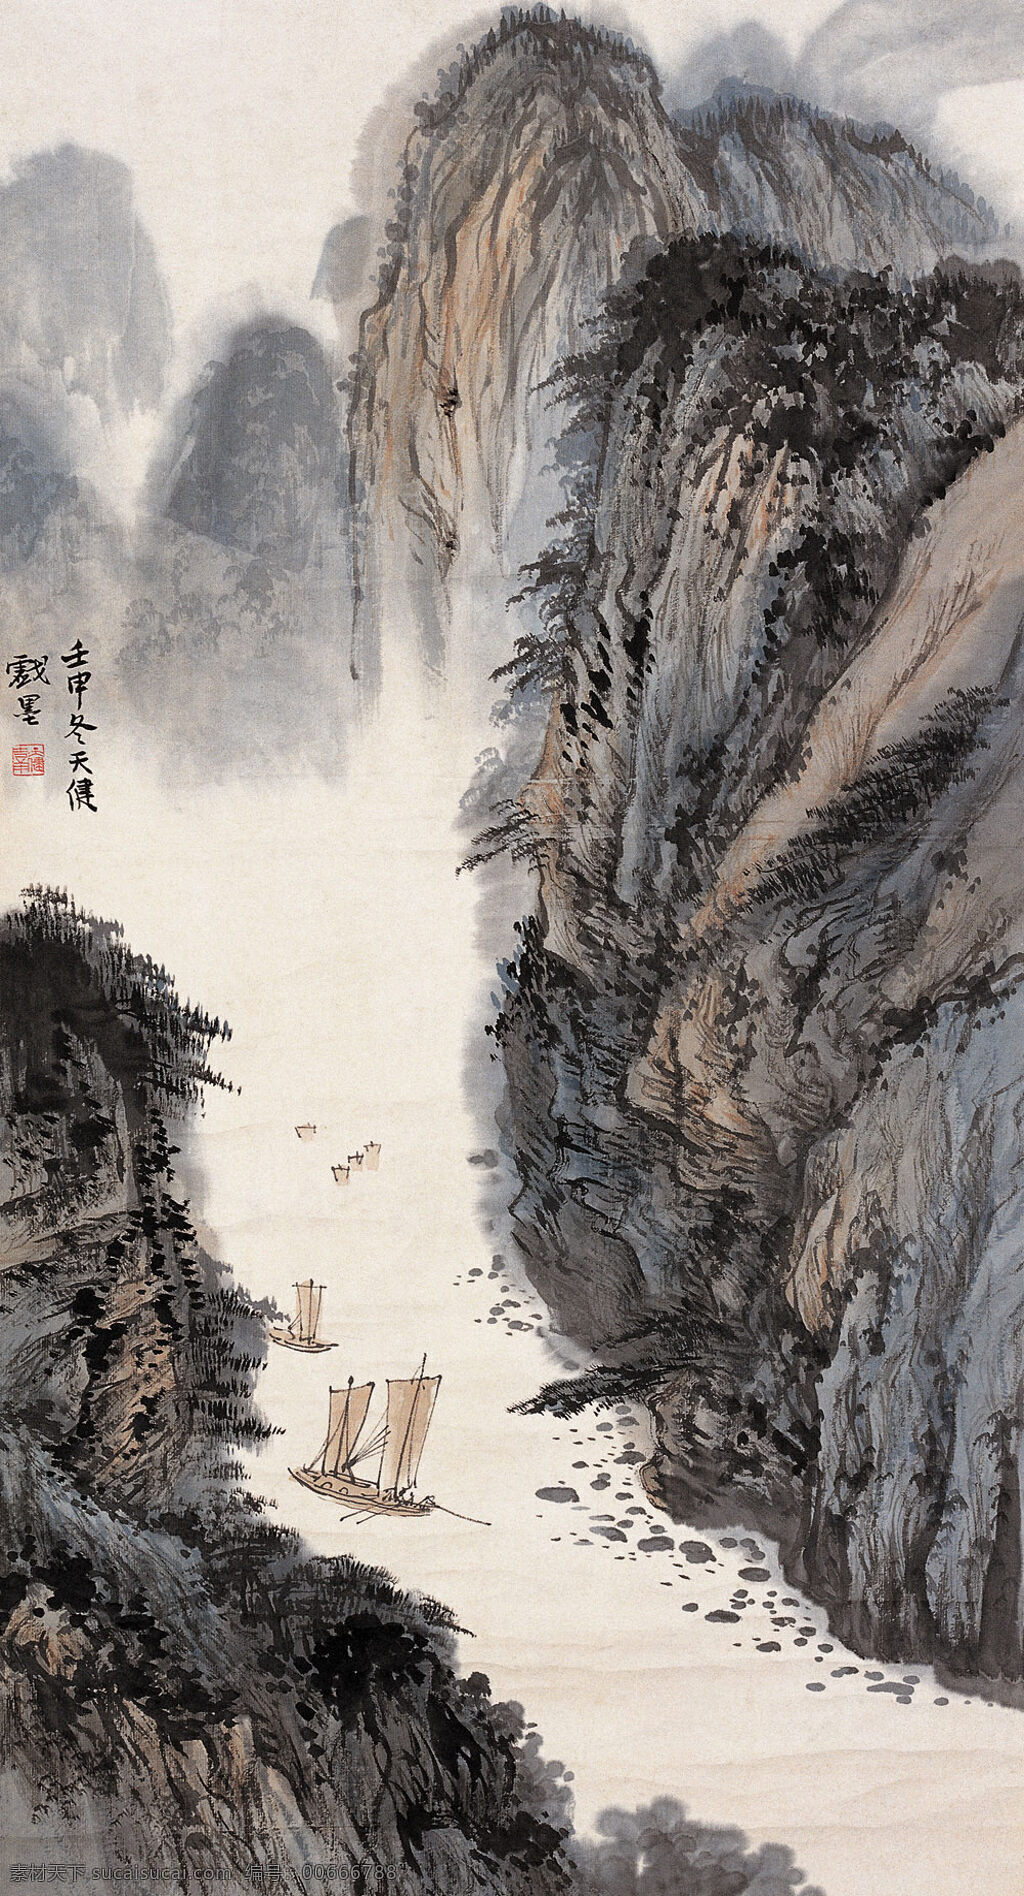 山水国画 峡江帆影图 立轴 设计素材 山水画篇 中国画篇 书画美术 灰色